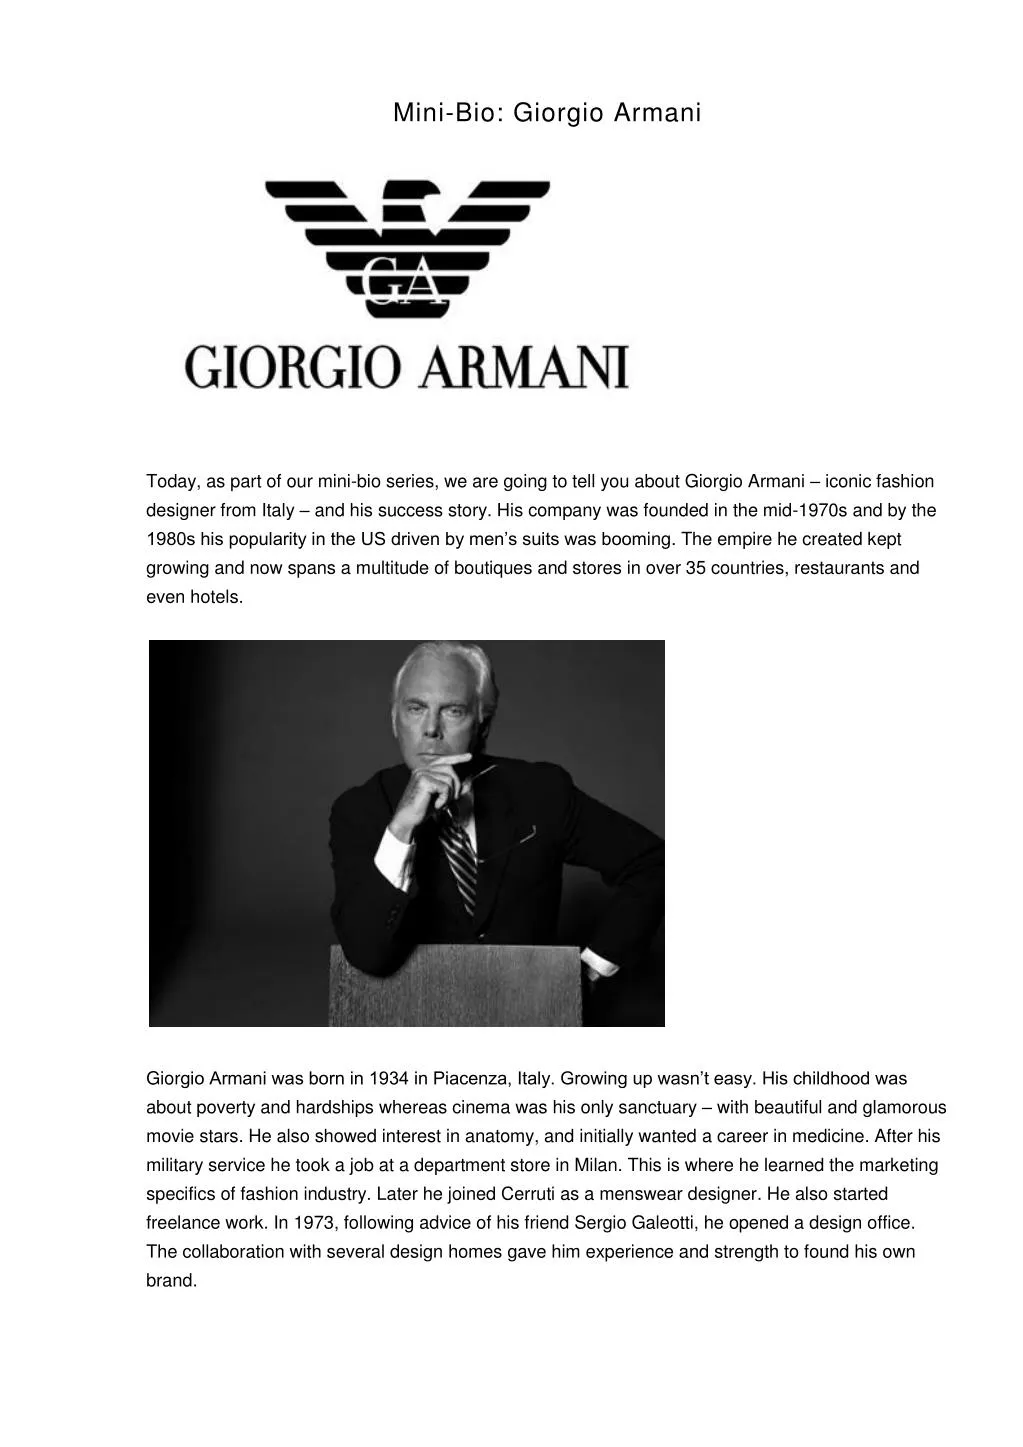 giorgio armani married